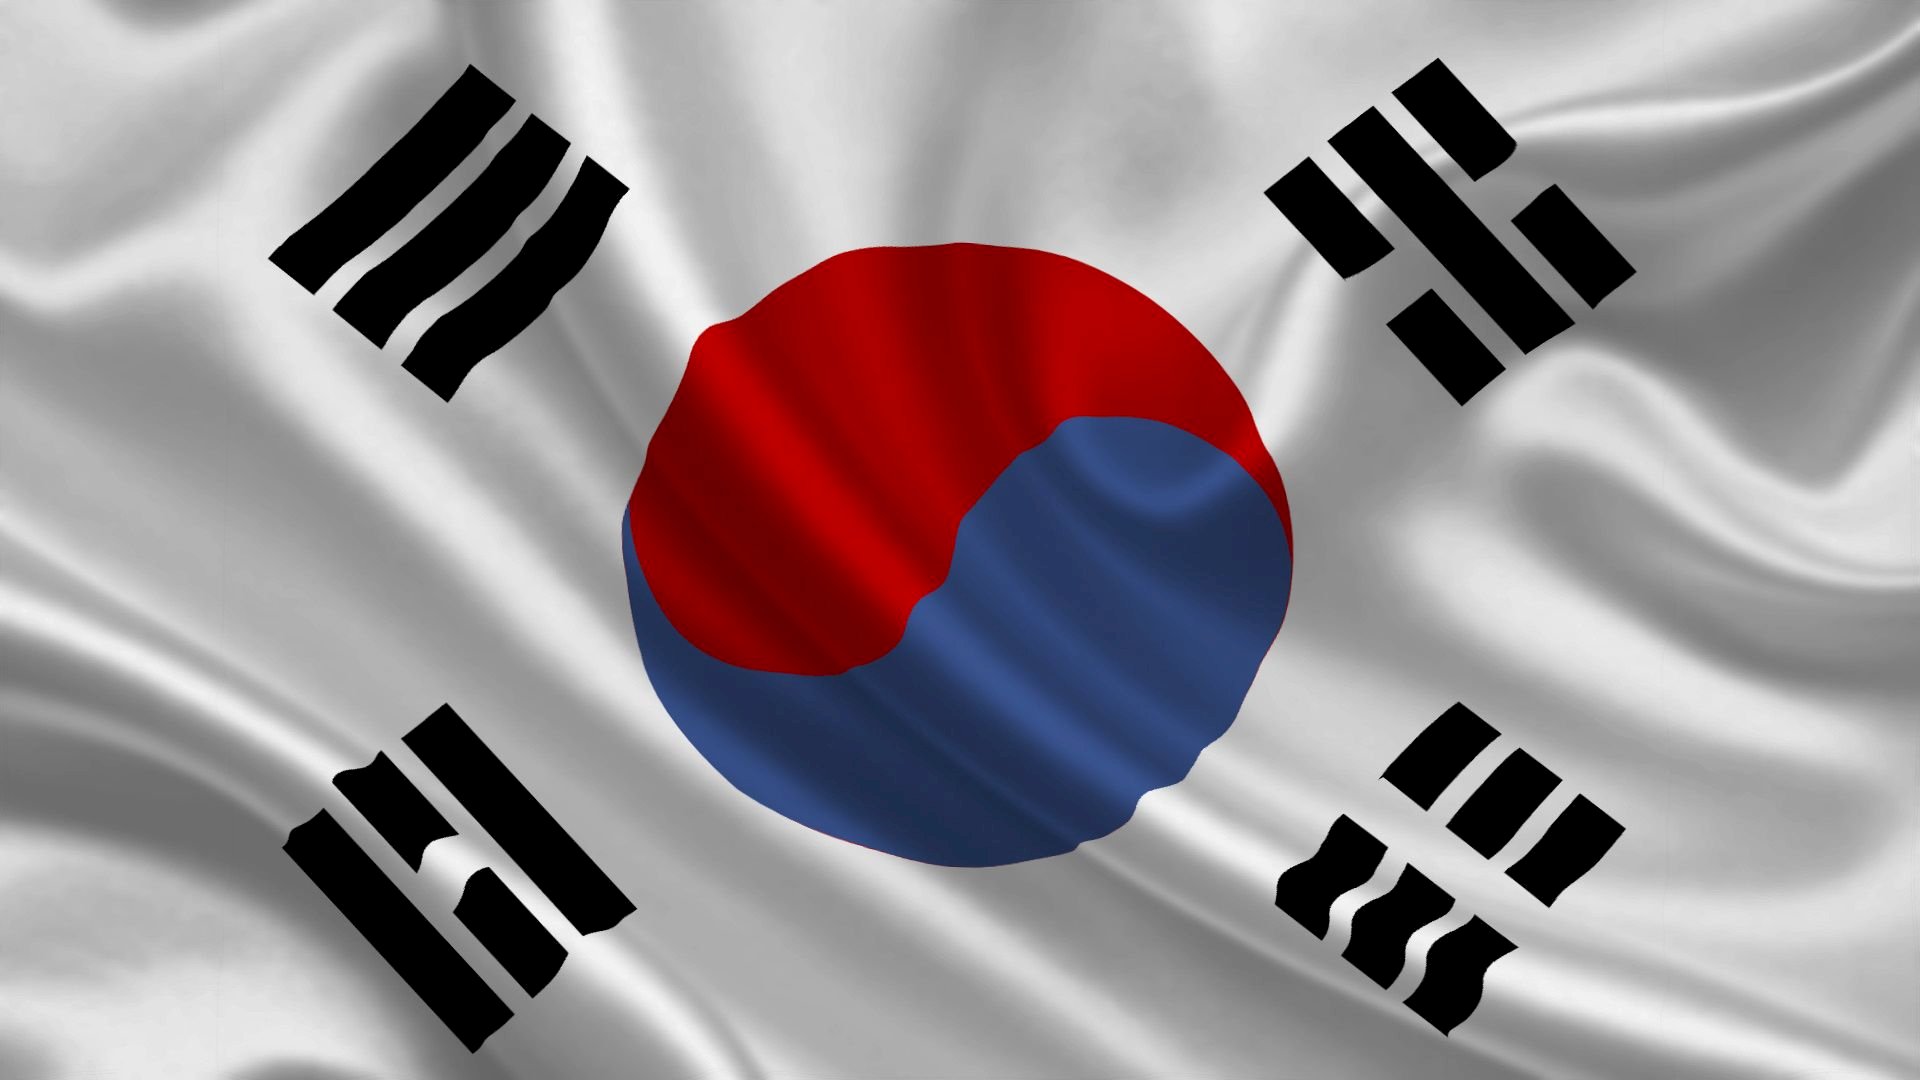 Cây cờ Hàn Quốc đã trở thành biểu tượng của sự độc lập và tự chủ của quốc gia này. Với màu sắc rực rỡ và thiết kế độc đáo, cây cờ này là một trong những lá cờ đẹp nhất và ý nghĩa nhất trên thế giới. Hãy cùng đến Hàn Quốc và chiêm ngưỡng sự tuyệt vời của cây cờ này trong một chuyến du lịch đáng nhớ.